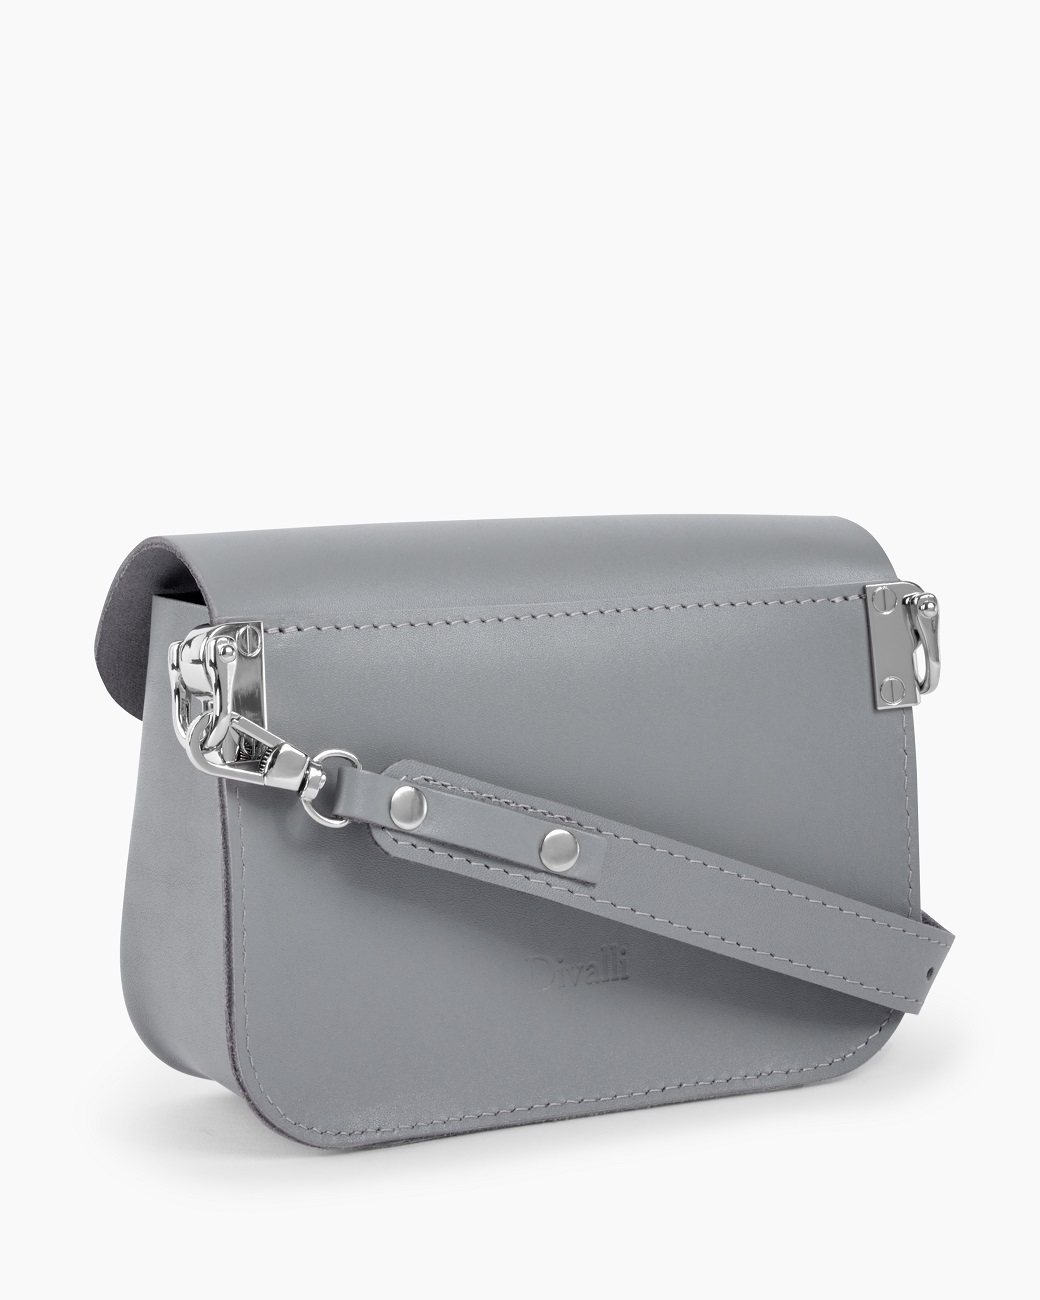 Женская поясная сумка из натуральной кожи серая A001 grey mini